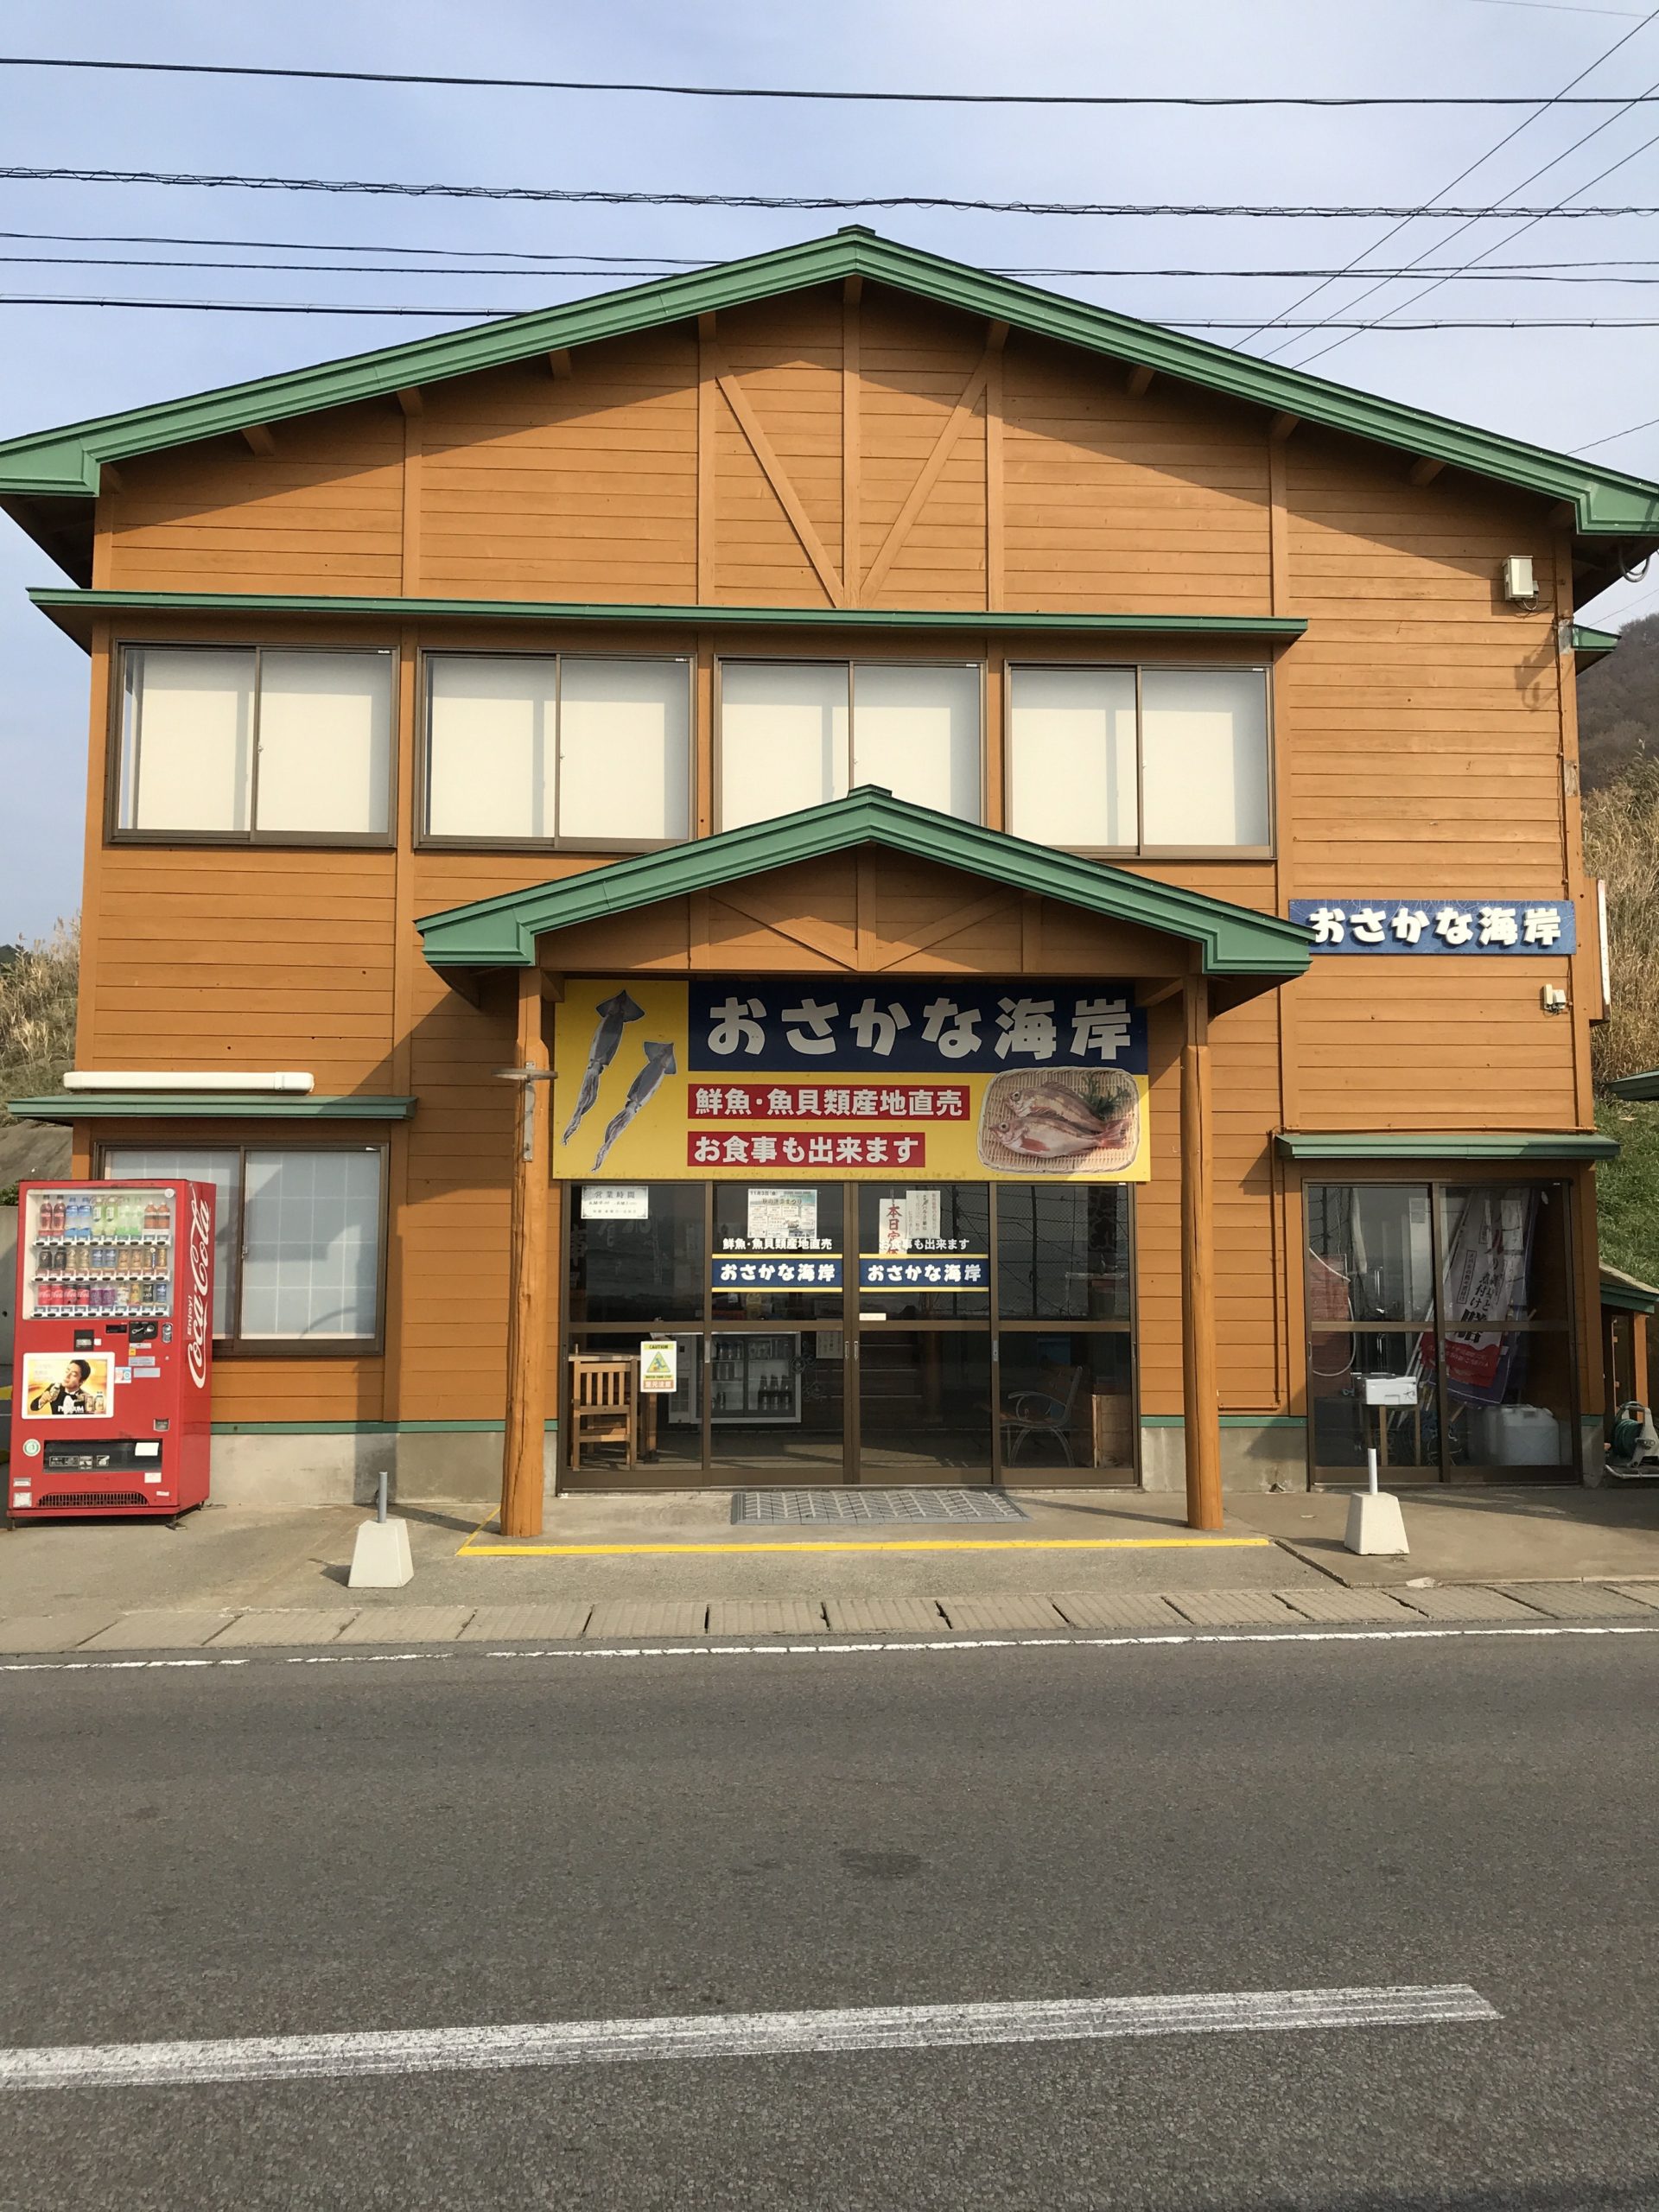 青森が味わえるお店 青森県内 西南津軽地域 お食事と鮮魚販売「おさかな海岸」